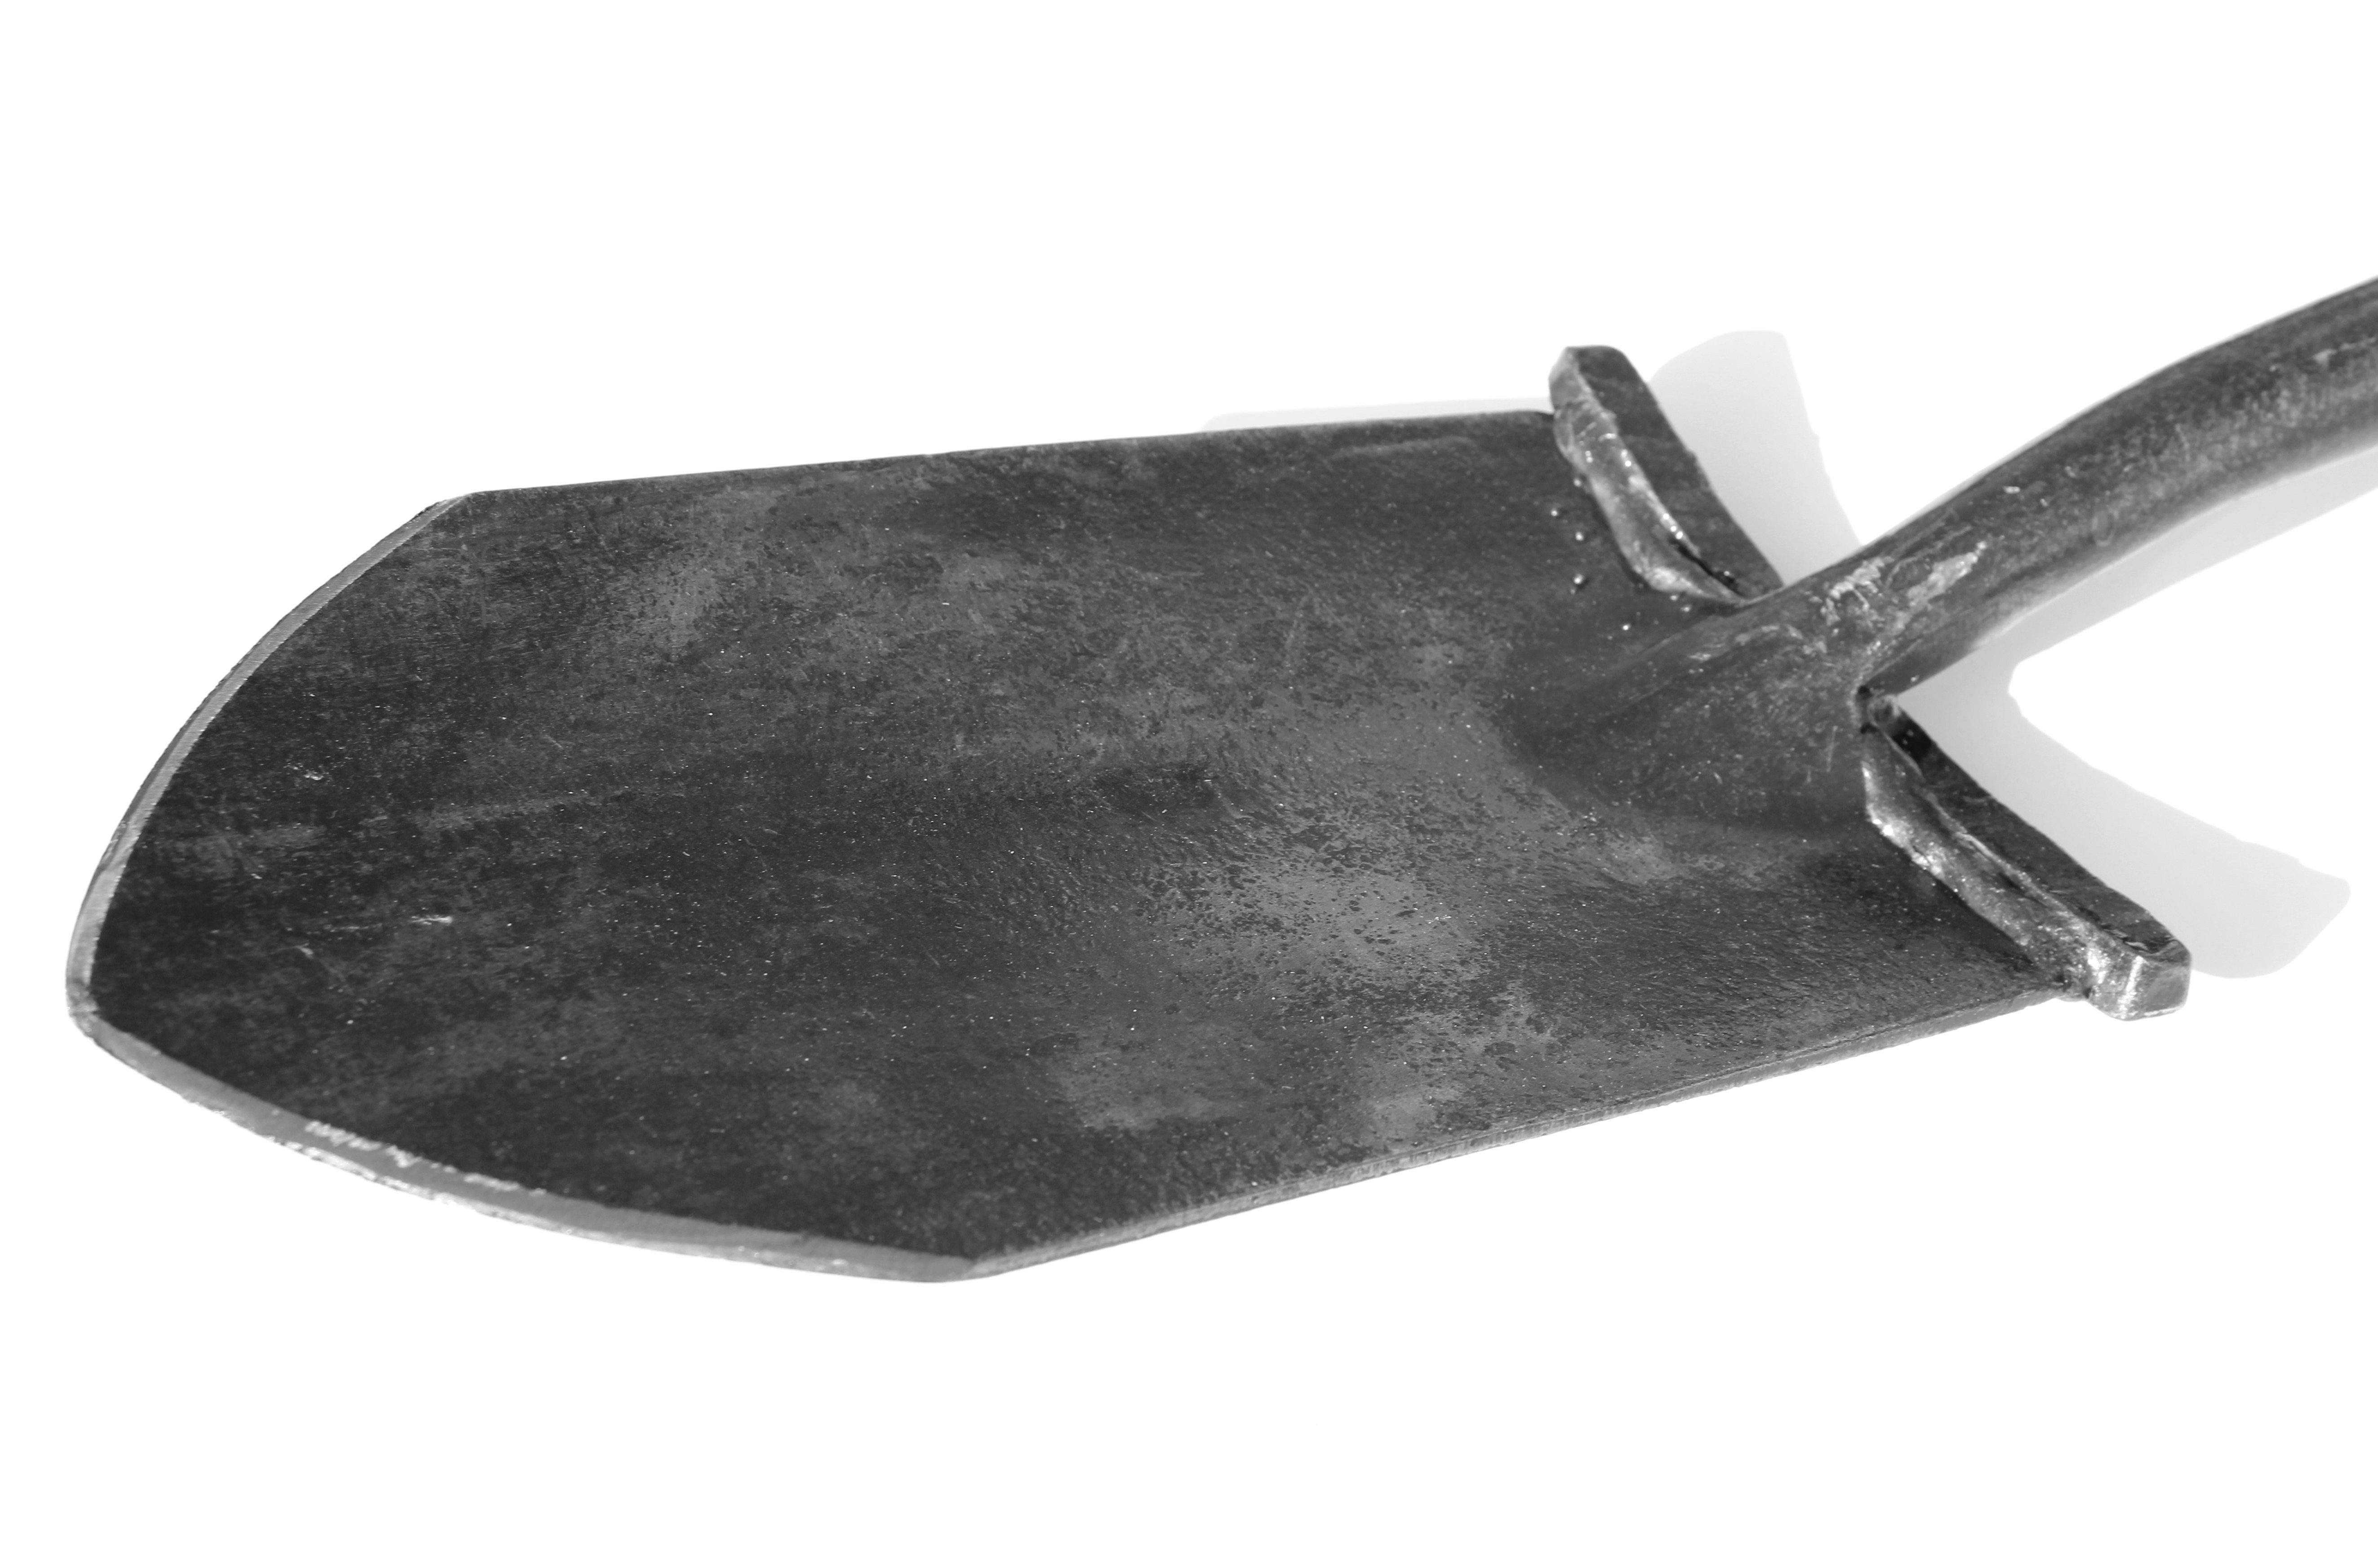 Krumpholz Spaten Spitzspaten (aus einem und (80 cm) 1770 Nr. geschmiedet) Eschen-T-Stiel mit Form" Stück Tritt Stahl "Englische